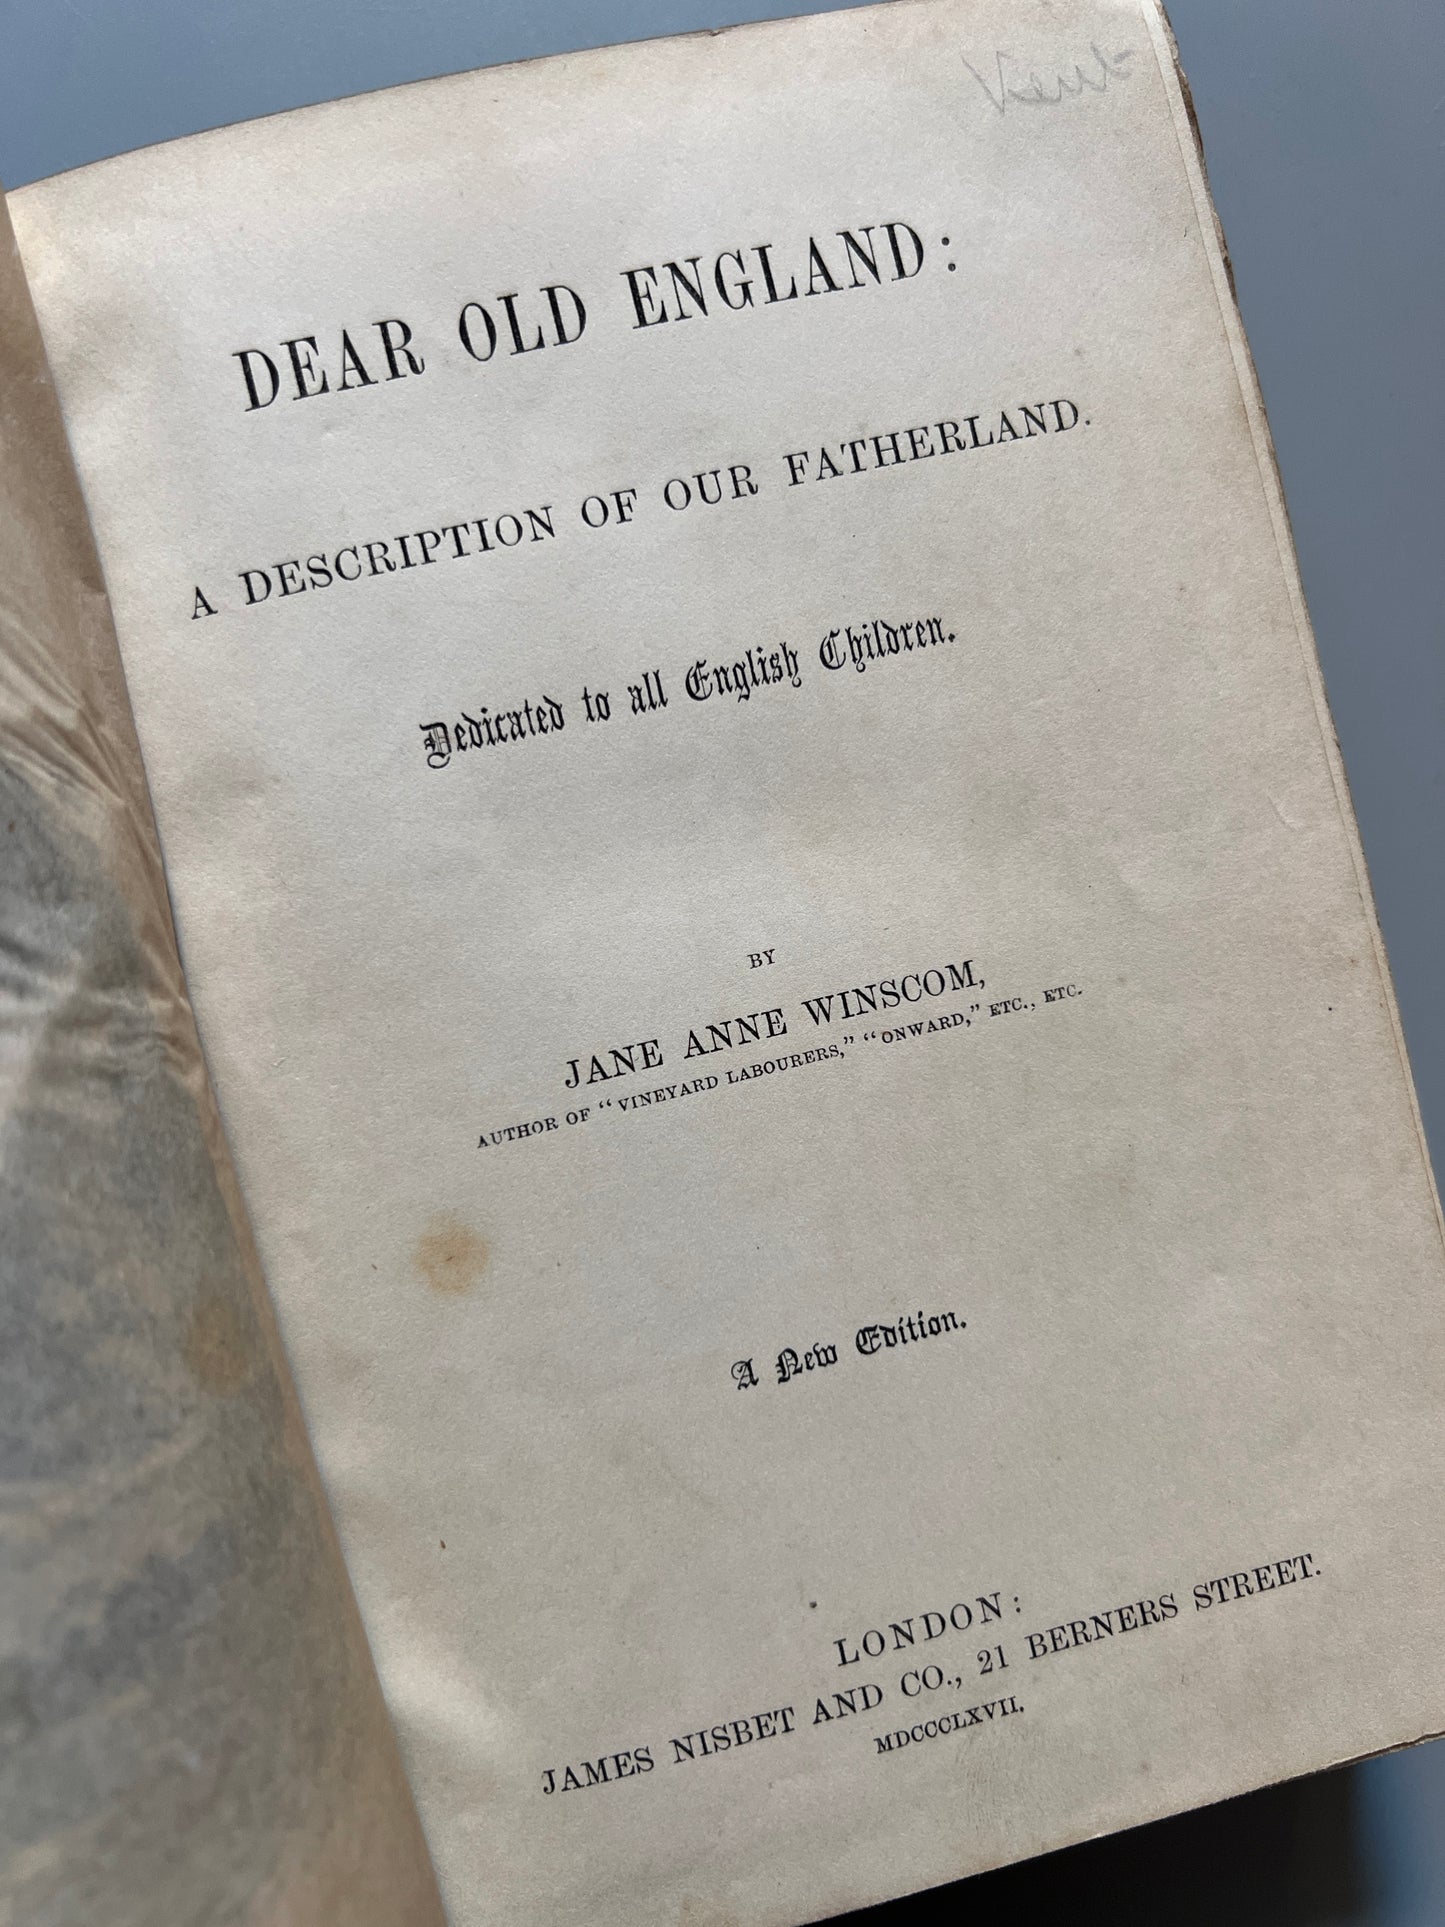 Dear old England, Jane Anne Winscom - James Nisbet and Co, 1867